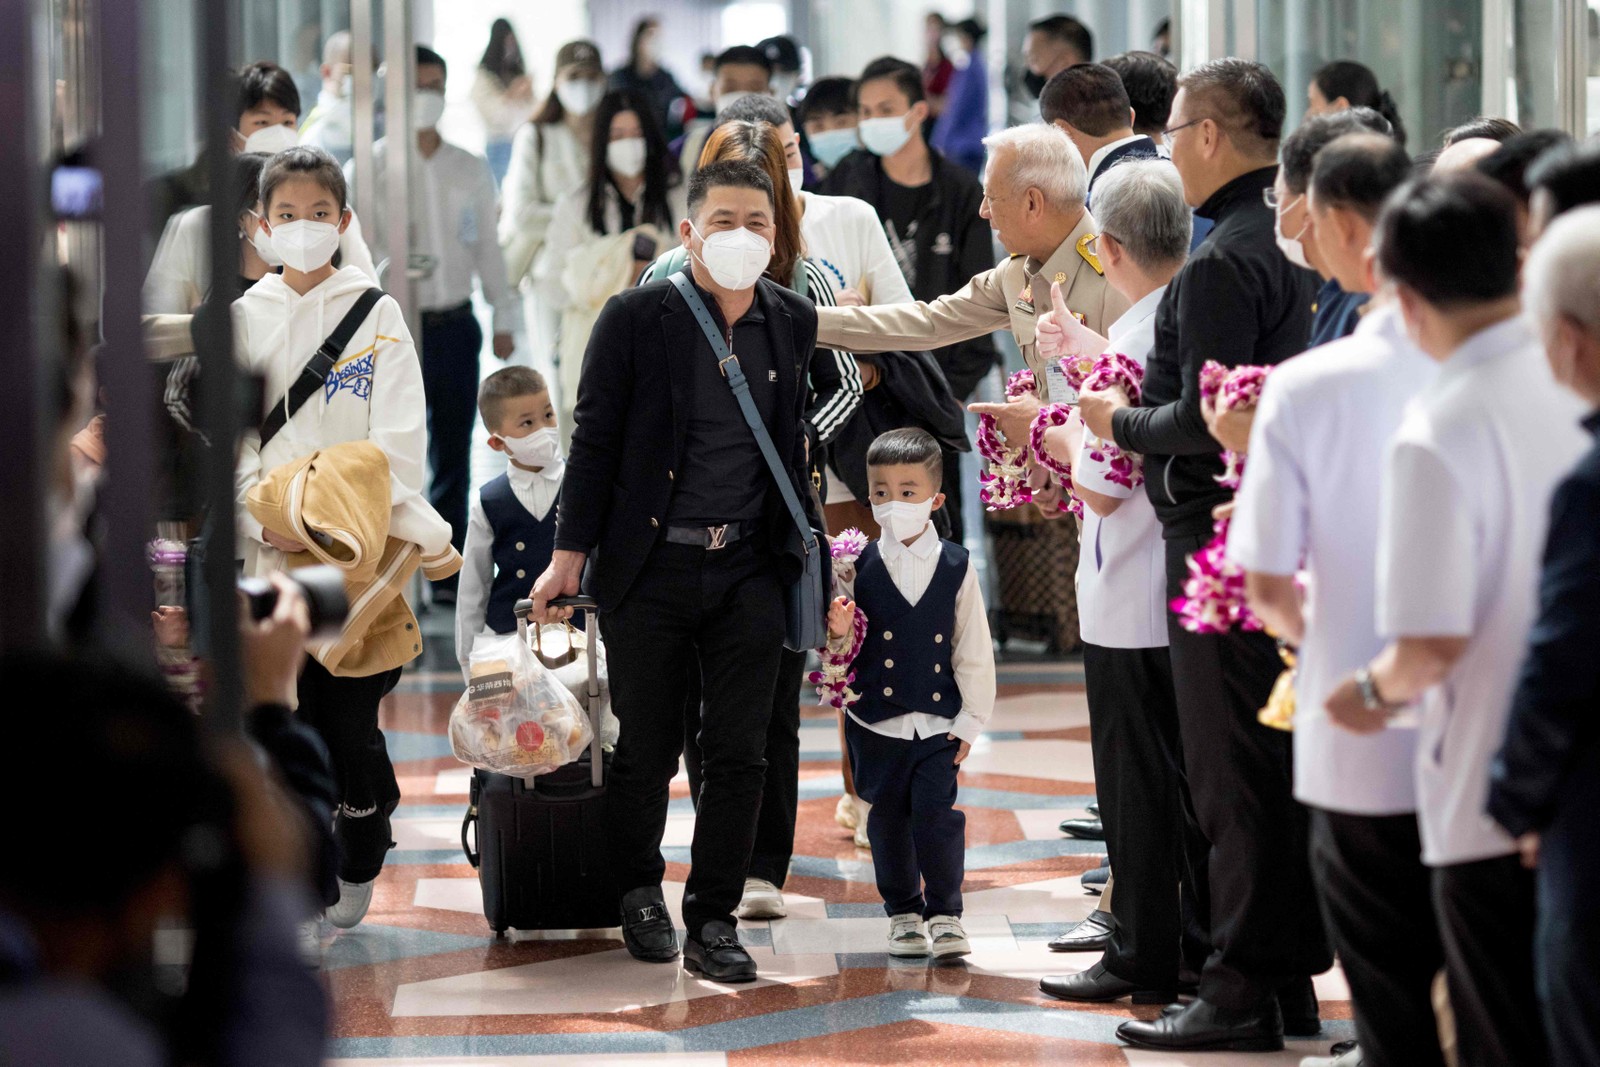 Viajantes de um voo da Xiamen Airlines são recebidos por autoridades de saúde tailandesas e do governo ao chegarem ao aeroporto de Suvarnabhumi, em Bangcoc, após a China remover as restrições de viagem da Covid-19. — Foto: Jack TAYLOR / AFP